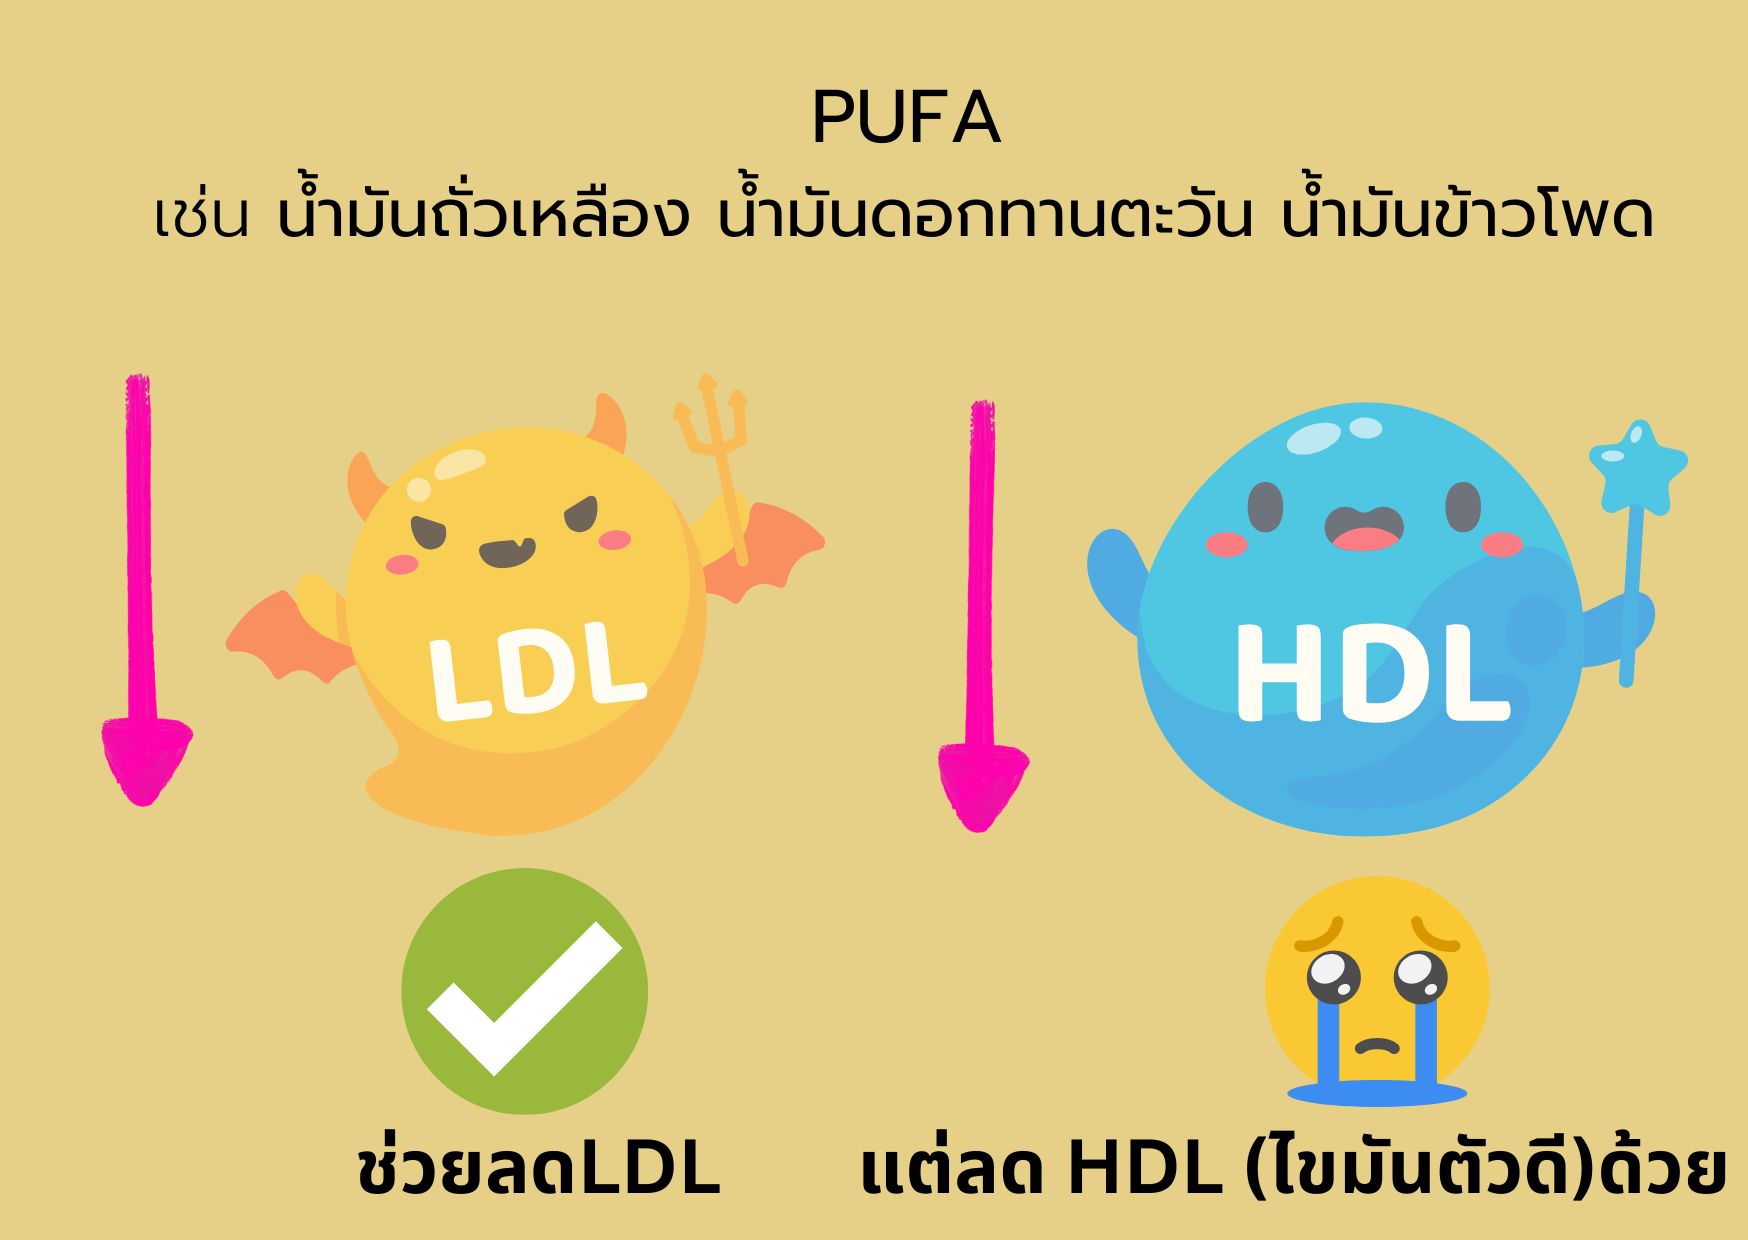 PUFA LDL HDL 